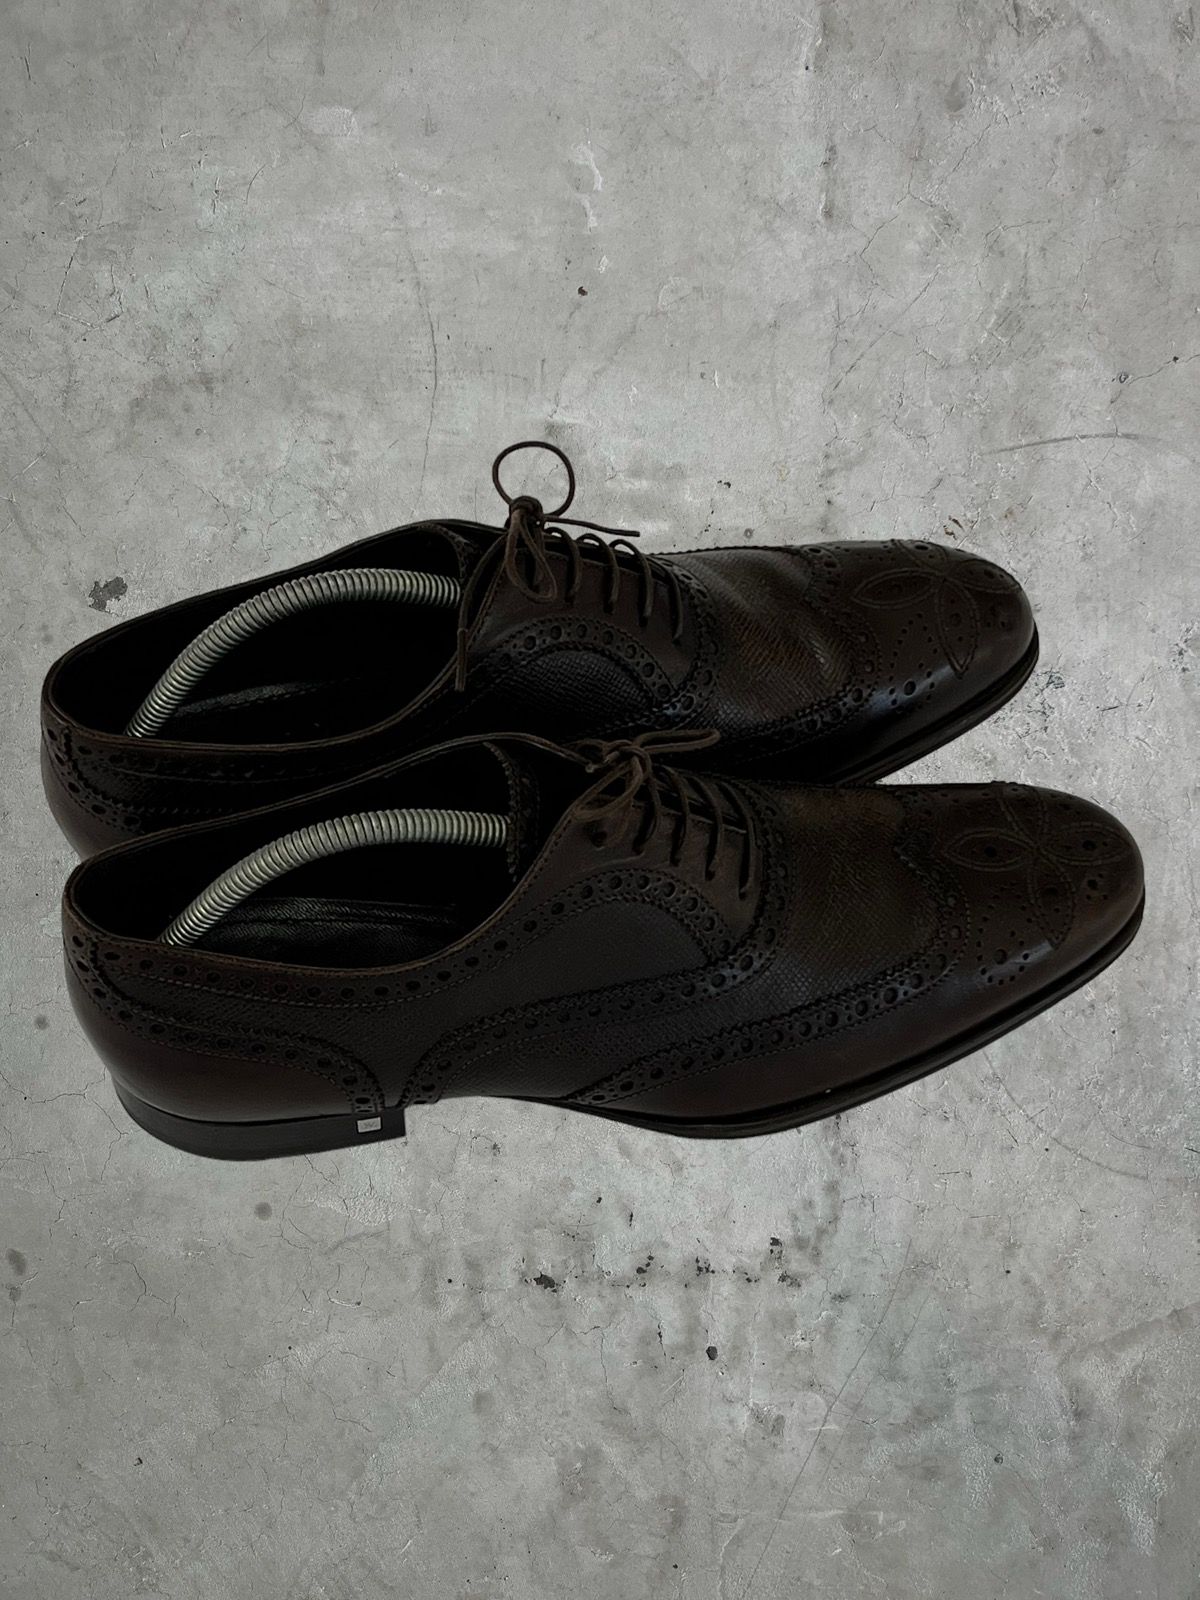 Louis Vuitton Louis Vuitton Detailed Leather Shoes Size US 10 / EU 43 - 1 Preview